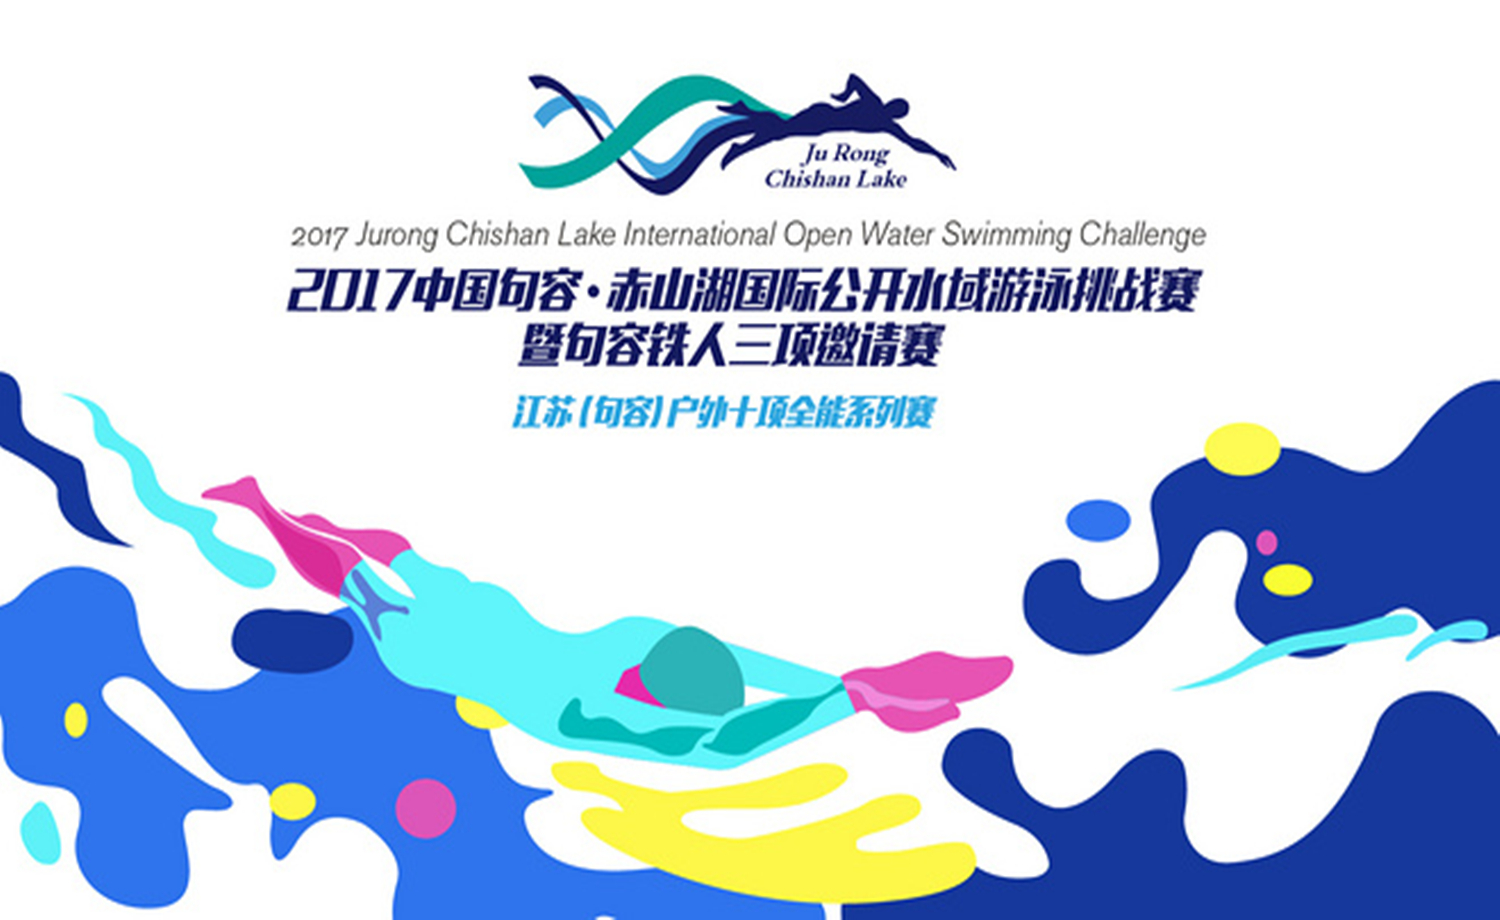 2017中国句容·赤山湖国际公开水域游泳挑战赛